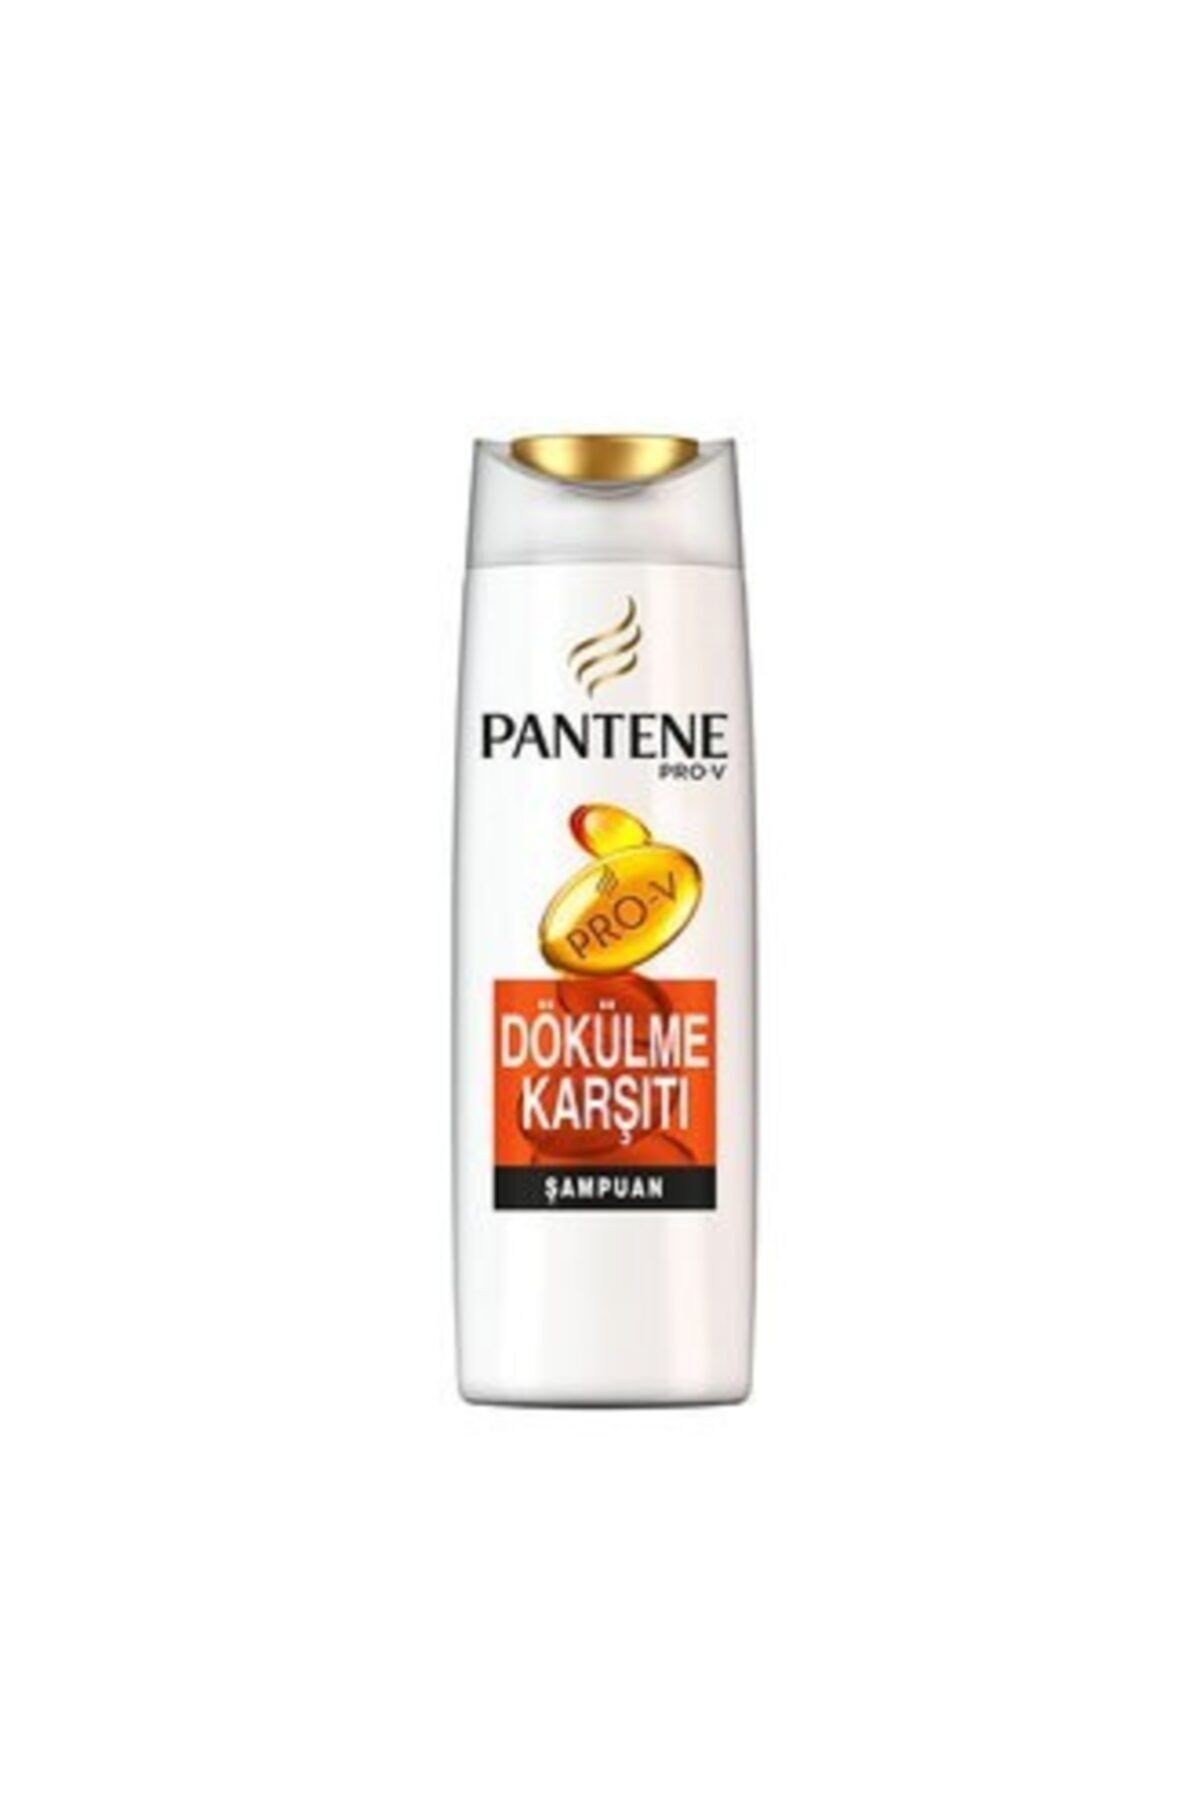 Pantene Dökülme Karşıtı Şampuan 500 ml